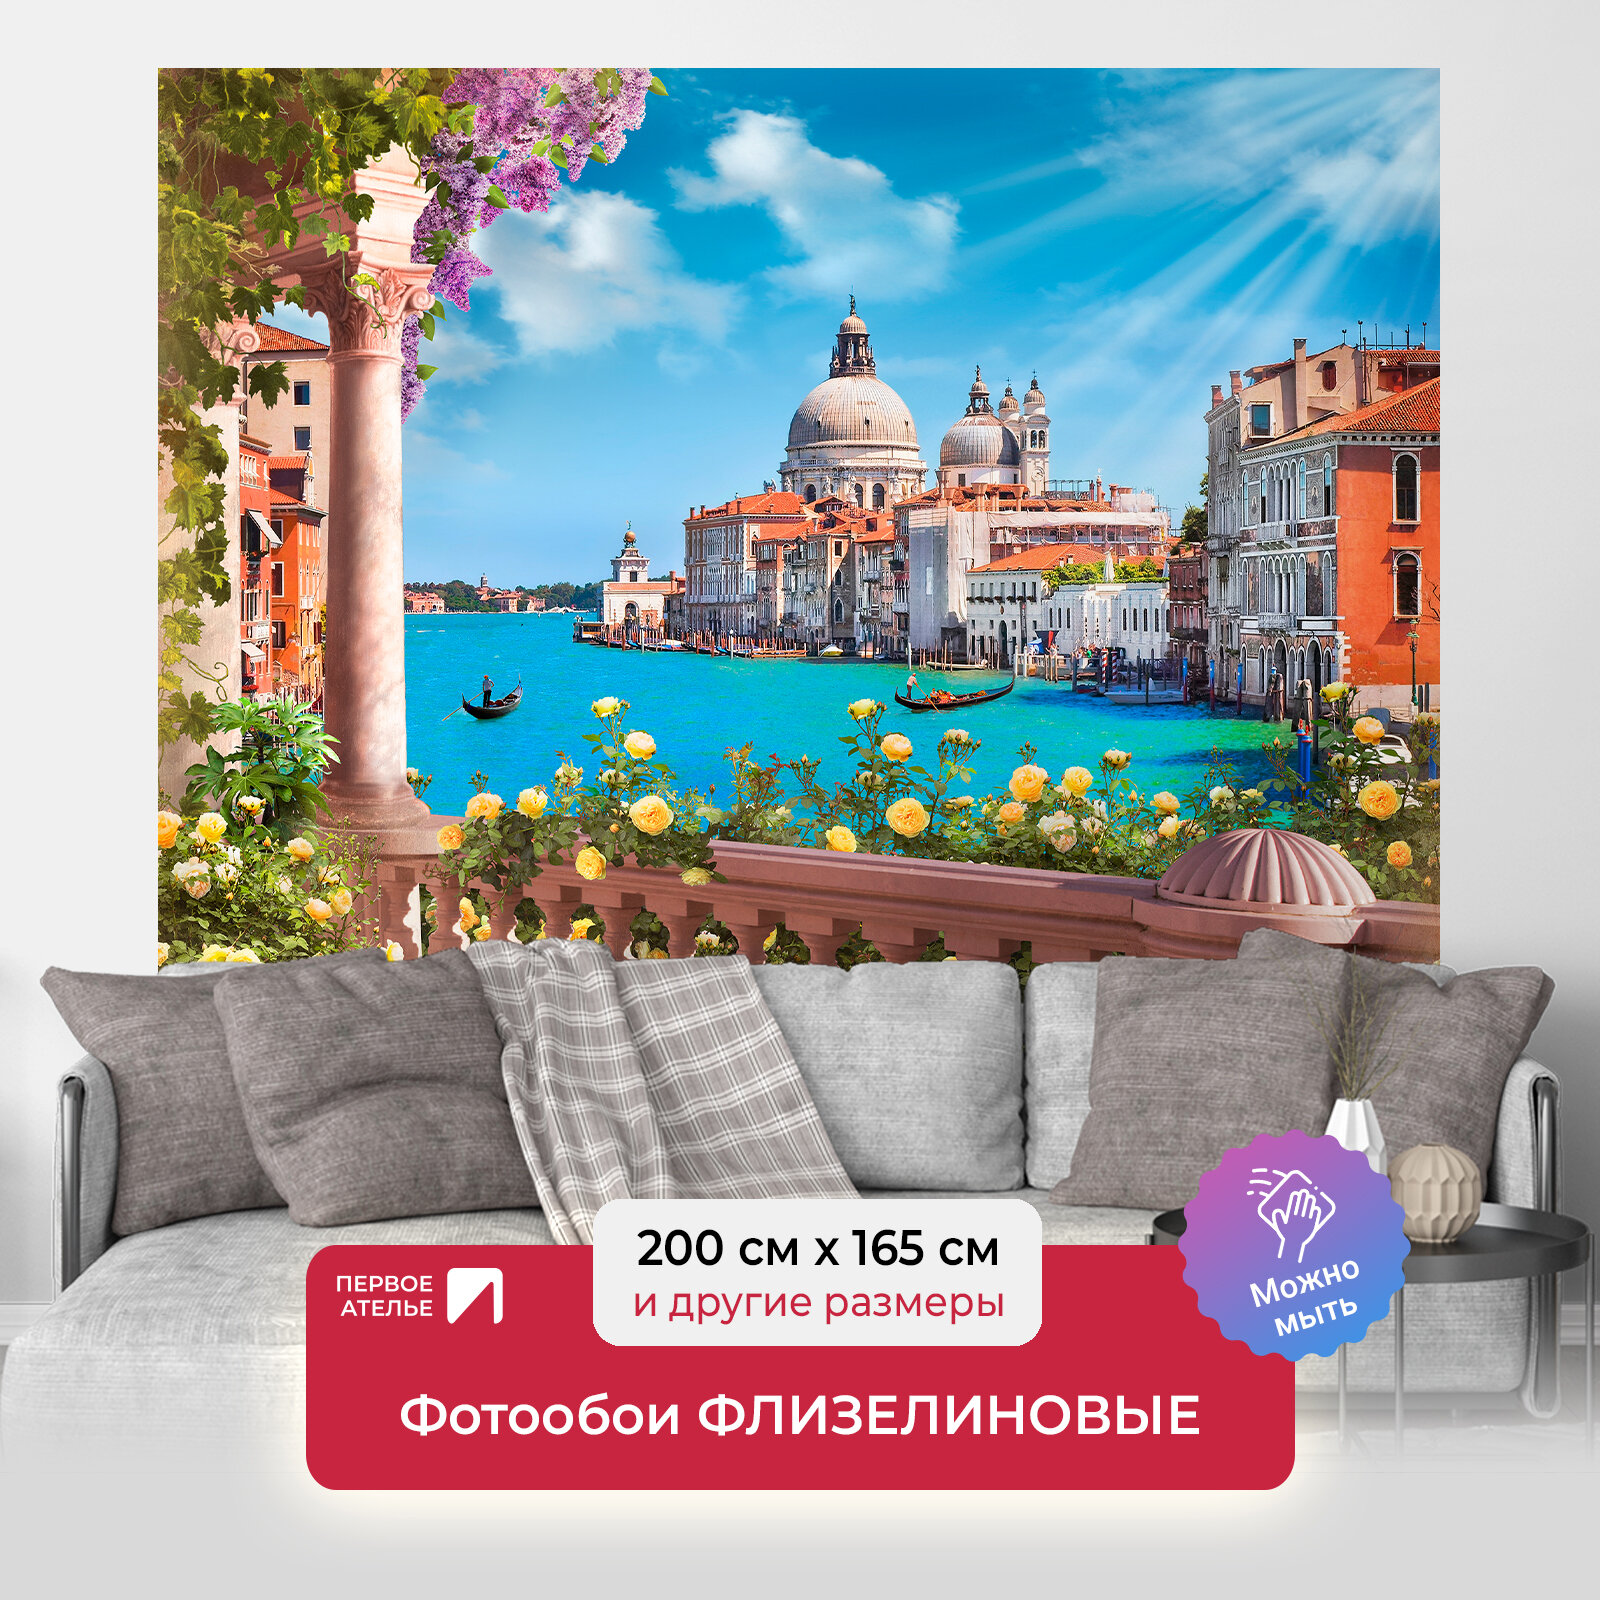 Фотообои на стену первое ателье "Венеция в солнечный день" 200х165 см (ШхВ), флизелиновые Premium